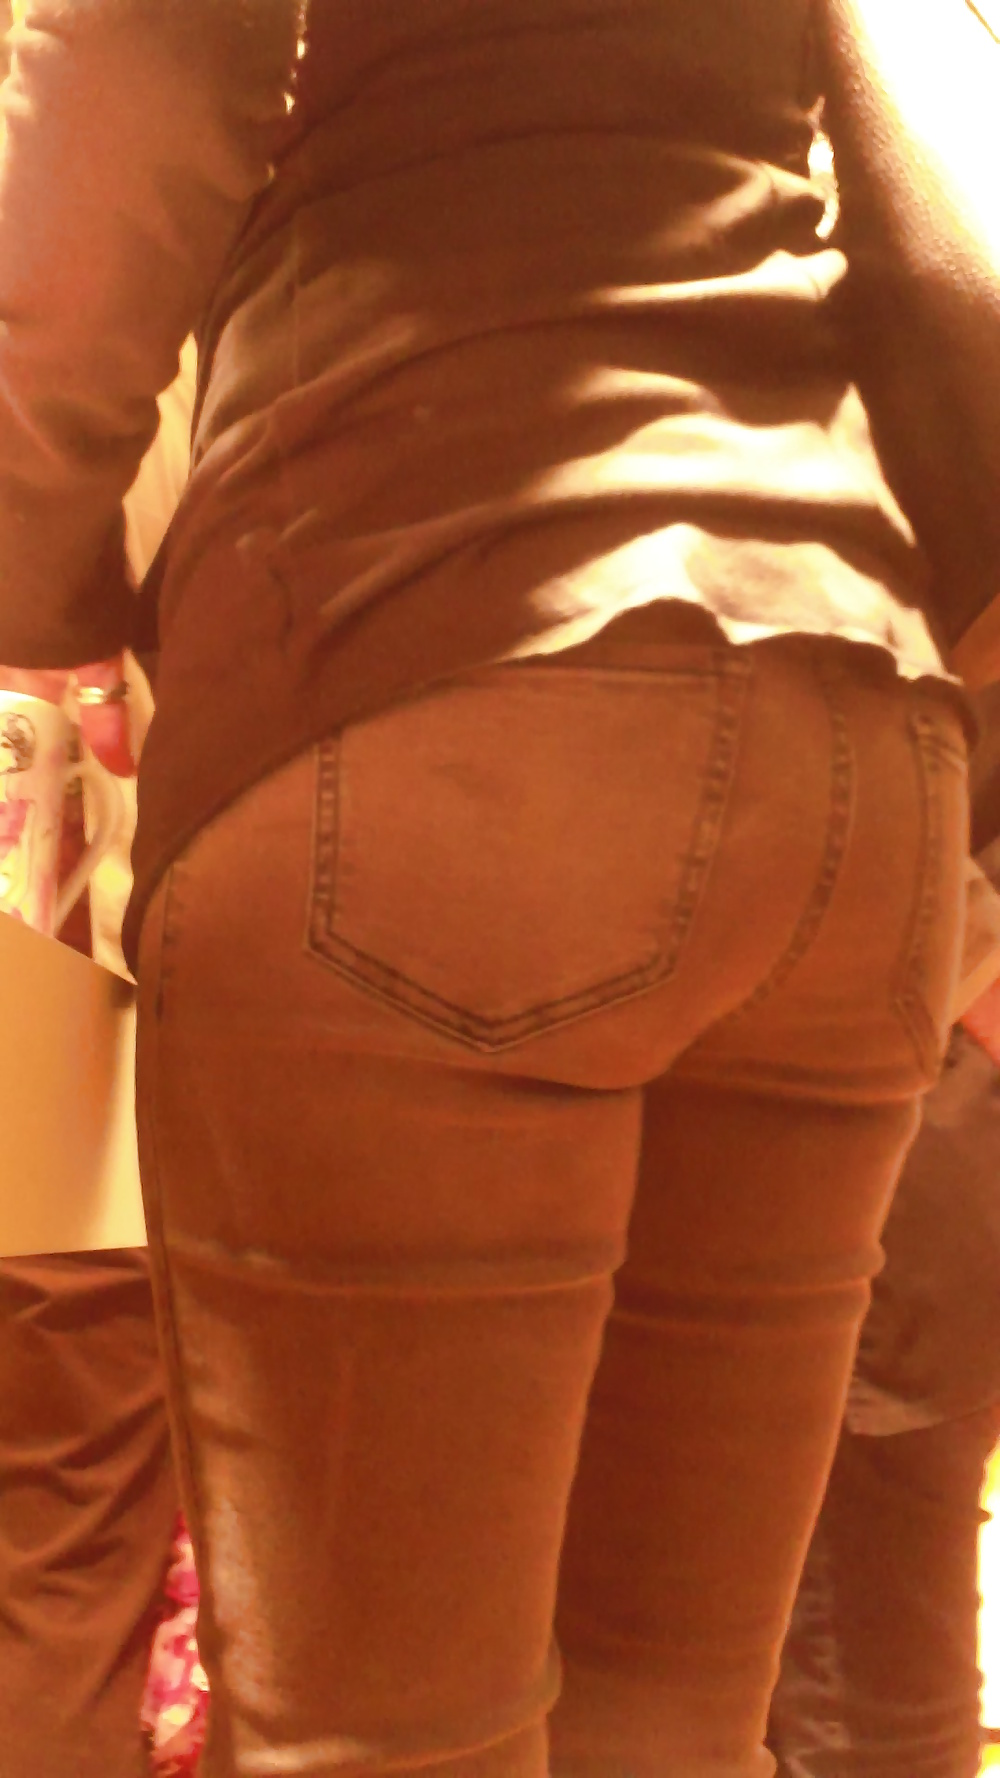 Popular teen girls ass & butt in jeans Part 6 #32010277